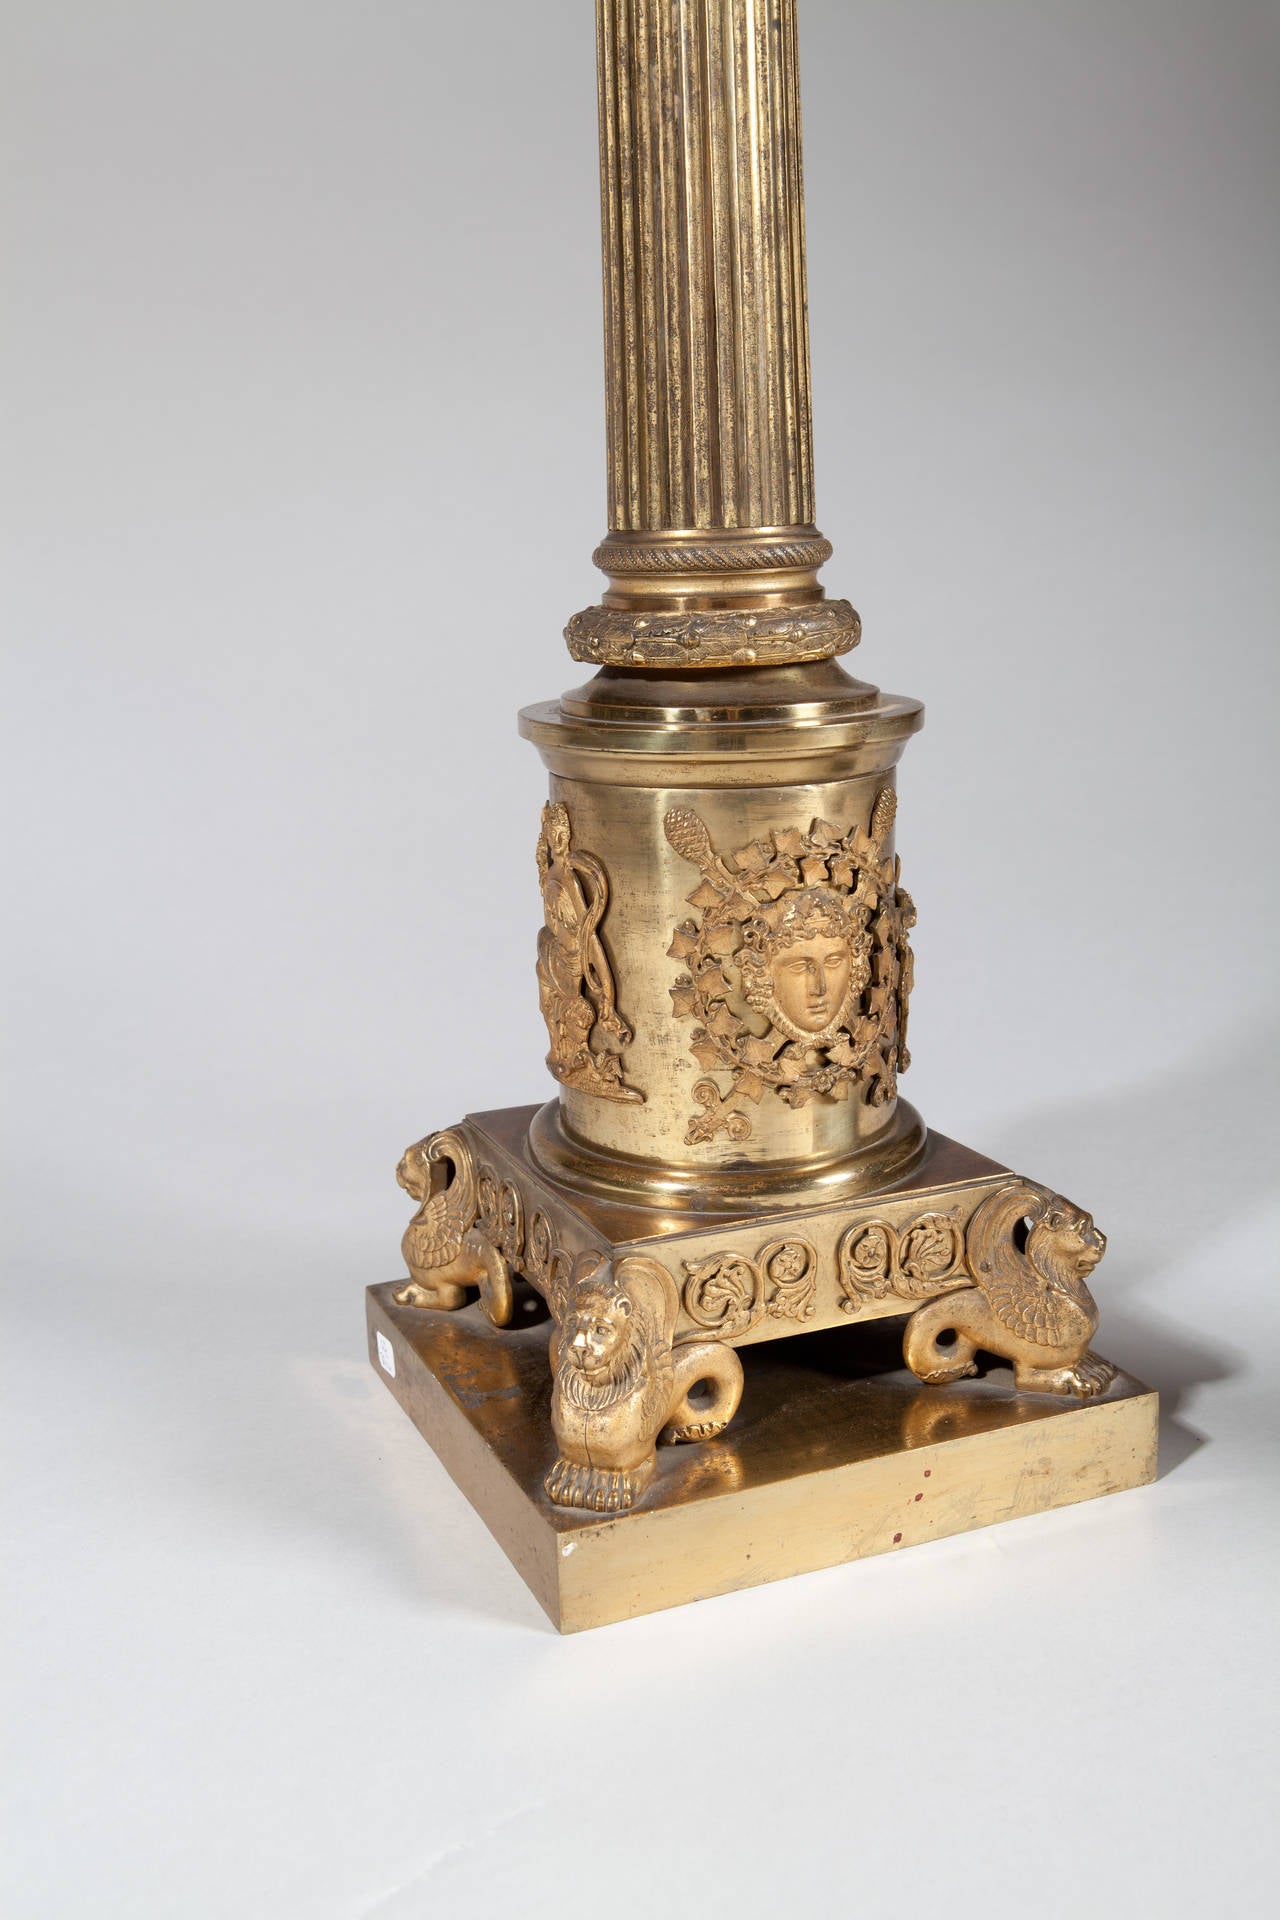 Ein außergewöhnliches Paar monumentaler Säulenlampen aus vergoldeter Bronze, jede mit kannelierten Säulen, fein ziselierten korinthischen Kapitellen und aufgesetzten klassischen Masken und Beschlägen am Sockel.